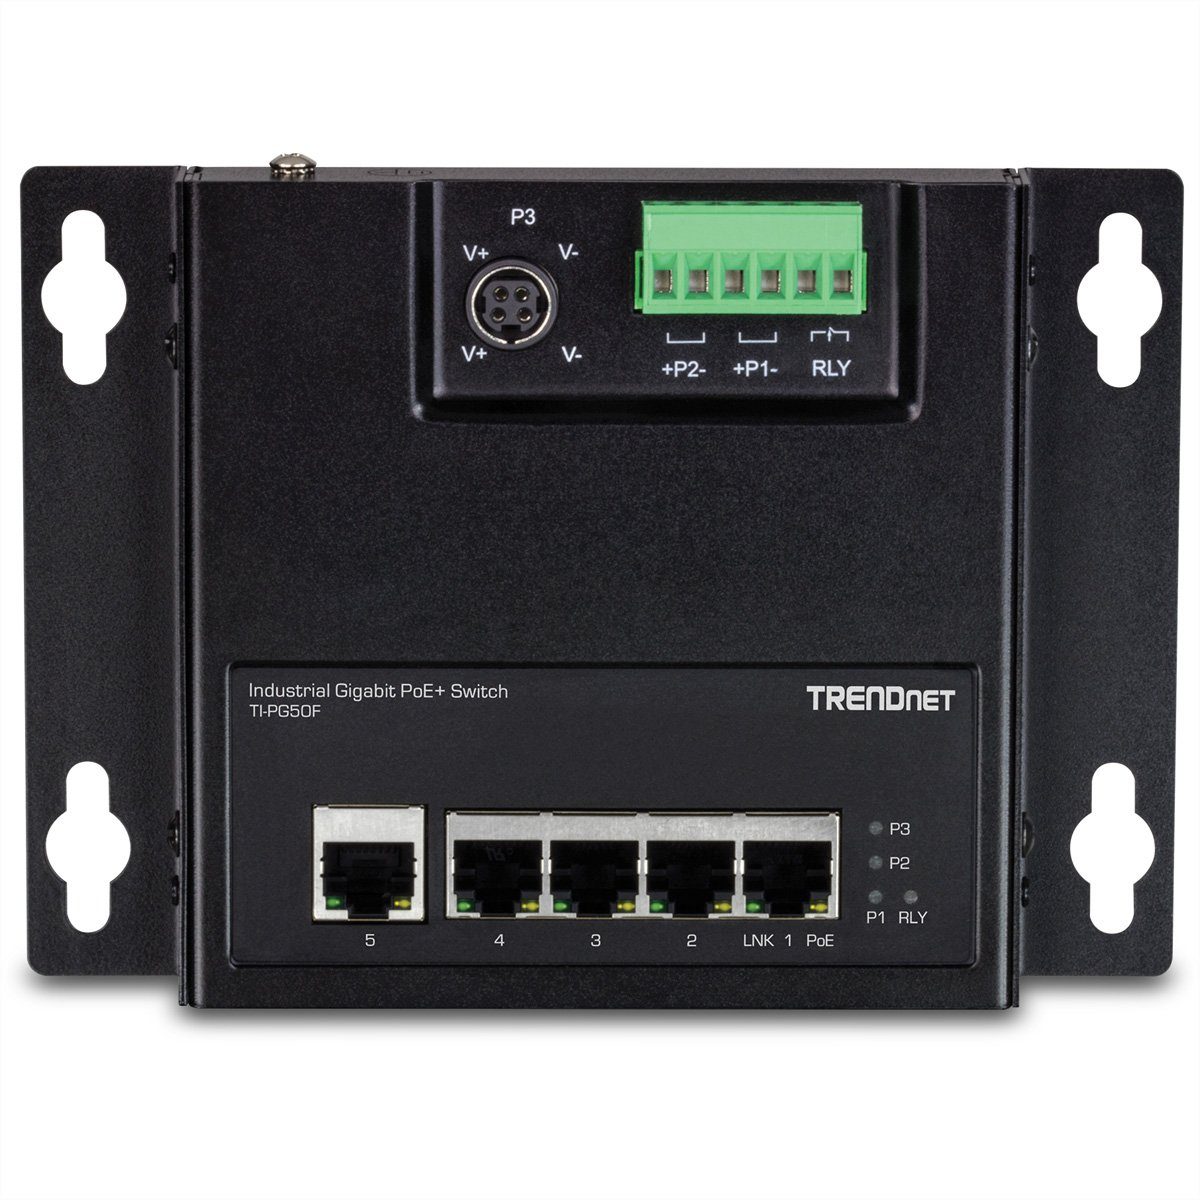 TI-PG50F (wandmontierbar) Industrial Gigabit Netzwerk-Switch Front Switch PoE+ 5-Port Access Trendnet